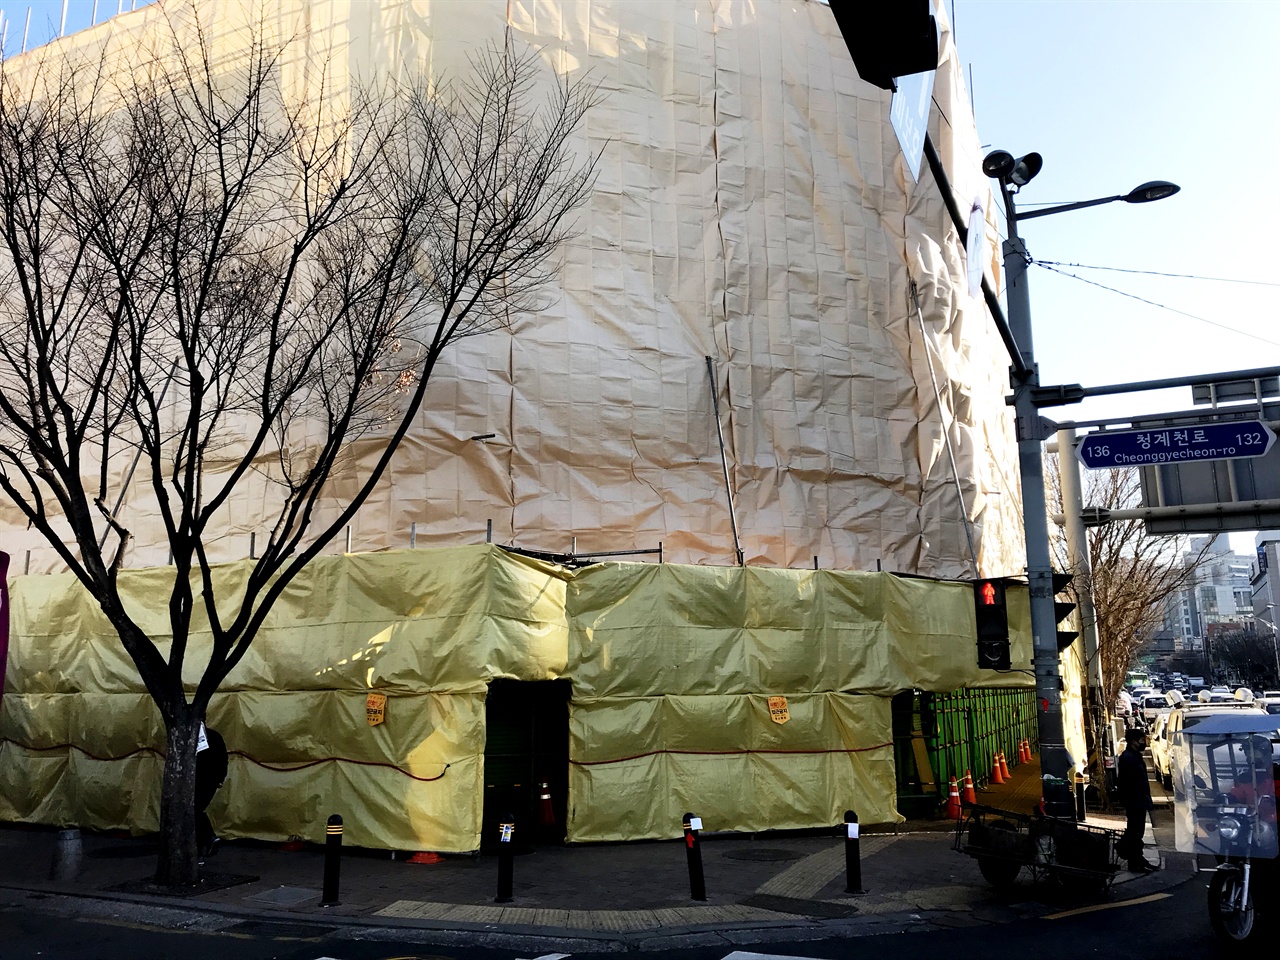 을지로에 불어닥친 재개발 바람. 사진은 평안상사가 있던 건물의 1월 31일 모습이다. 